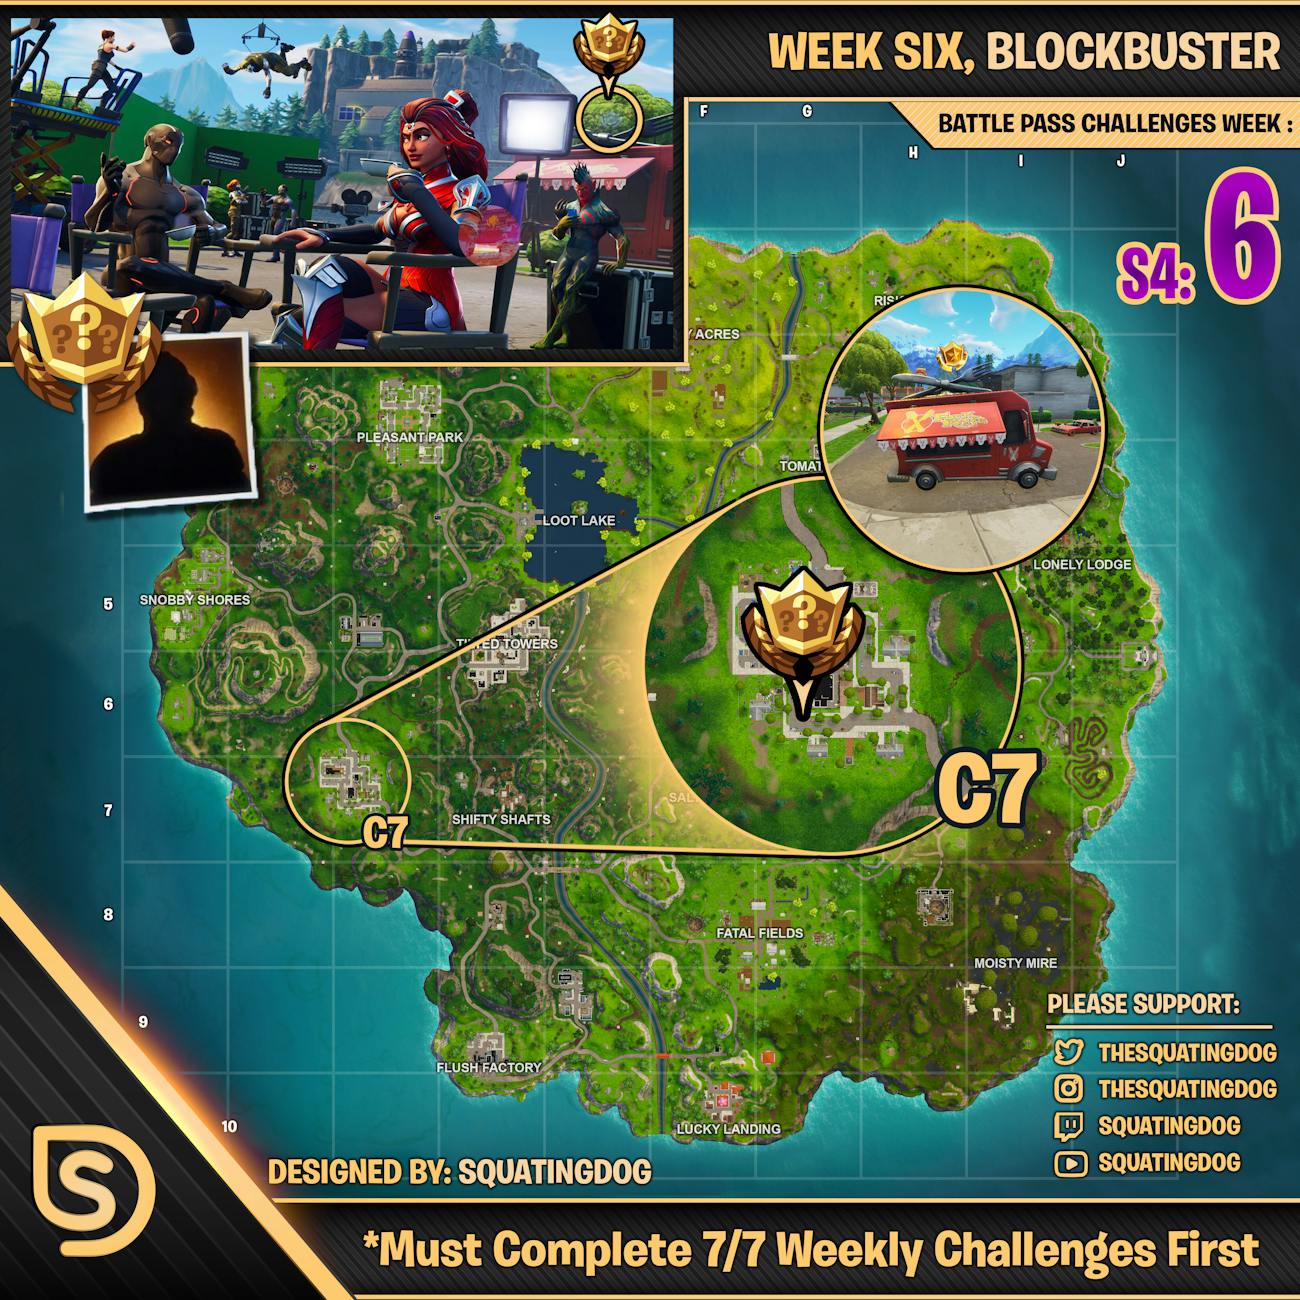 week 6 blockbuster guide - fortnite week 6 challenges loading screen